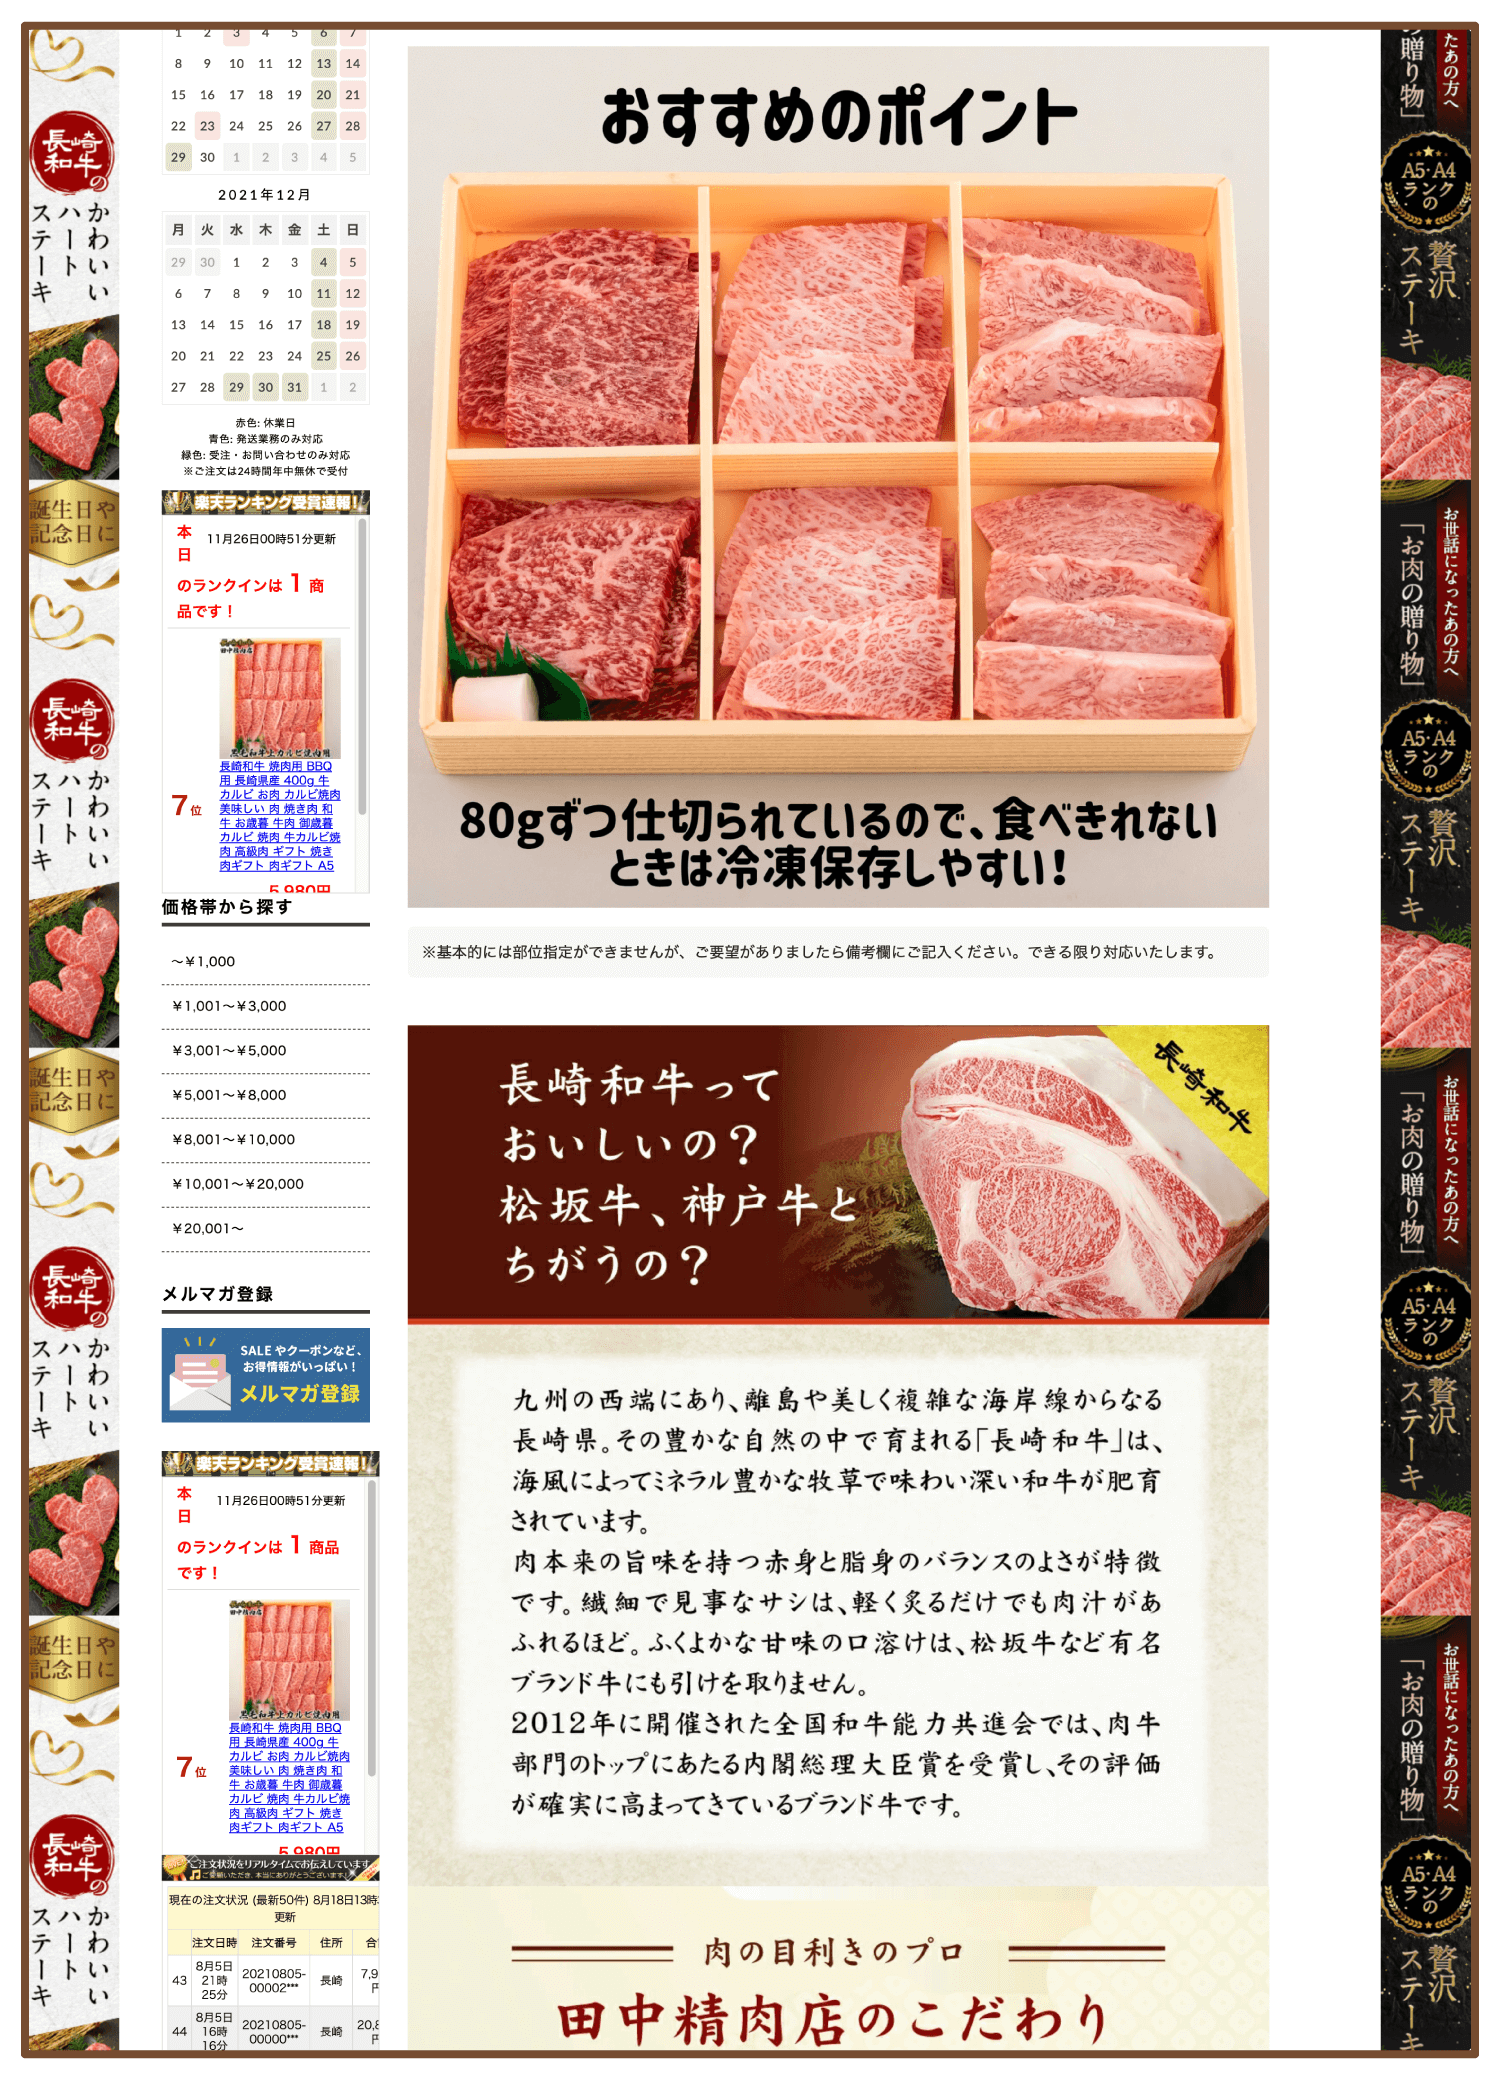 田中精肉店 様 サイト画像